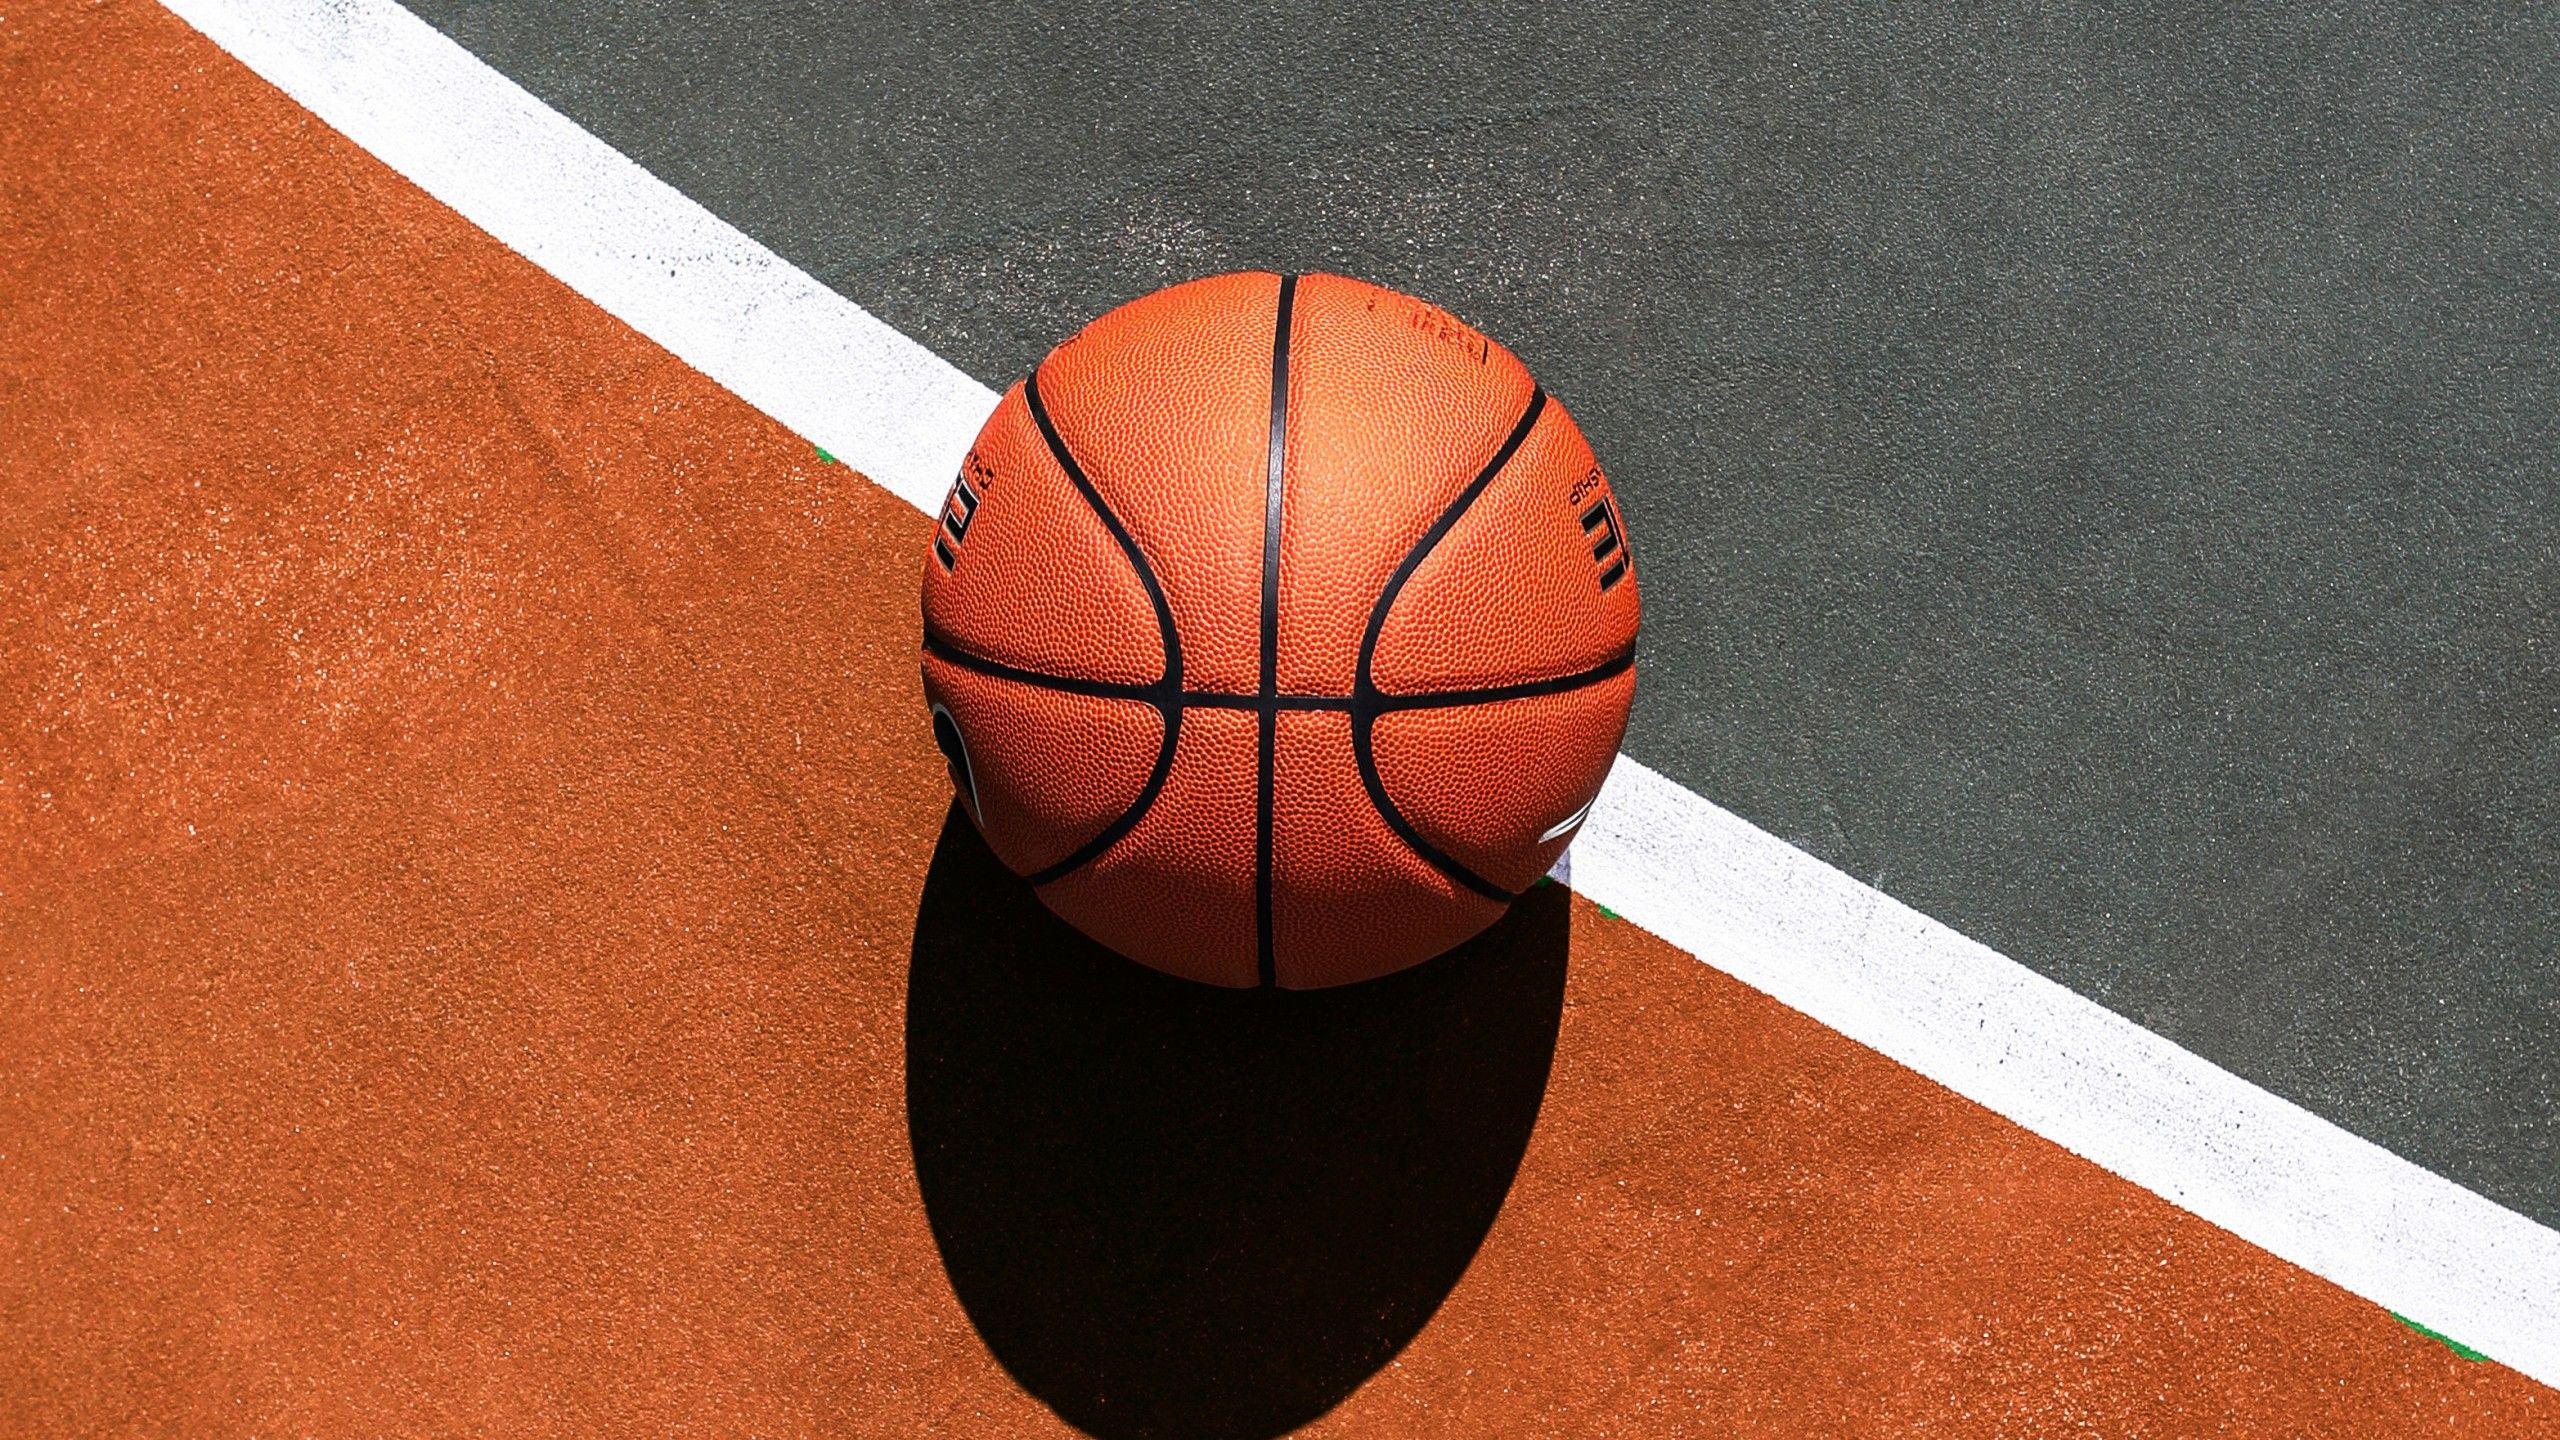 Wallpaper Basketball, Basketball court, HD, Sports